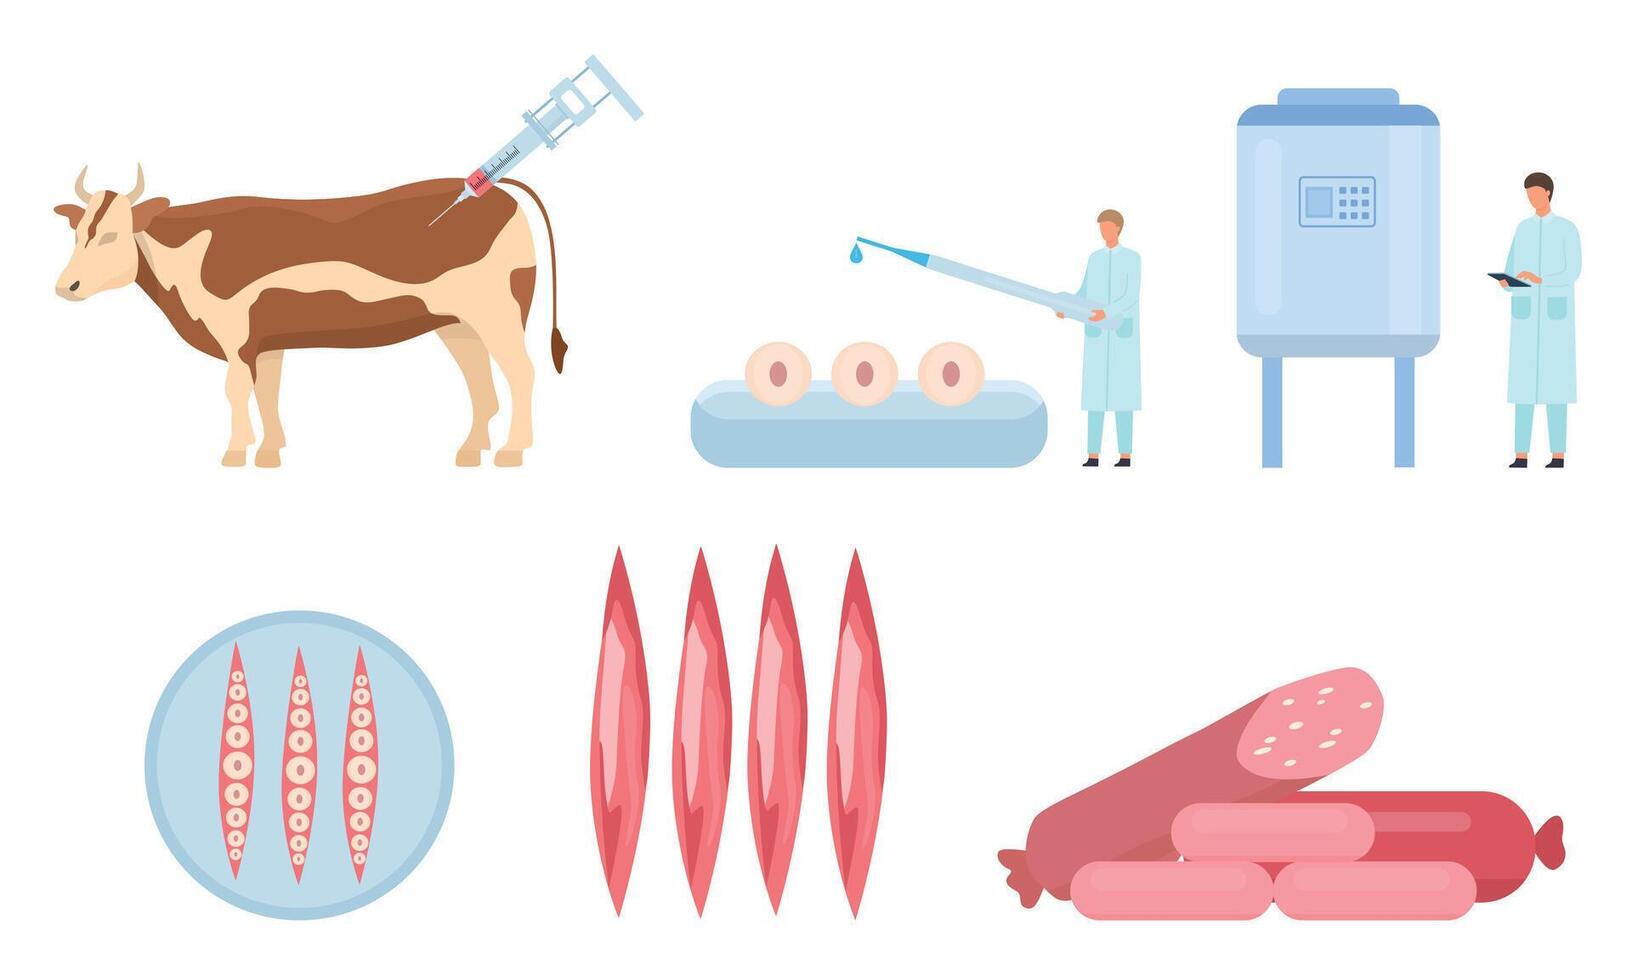 eben künstlich kultiviert Rindfleisch Fleisch Produktion Verfahren. Kuh Biopsie, Zellen und Muskel Wachstum, Labor Bioreaktor. Essen Wissenschaft Vektor Infografik